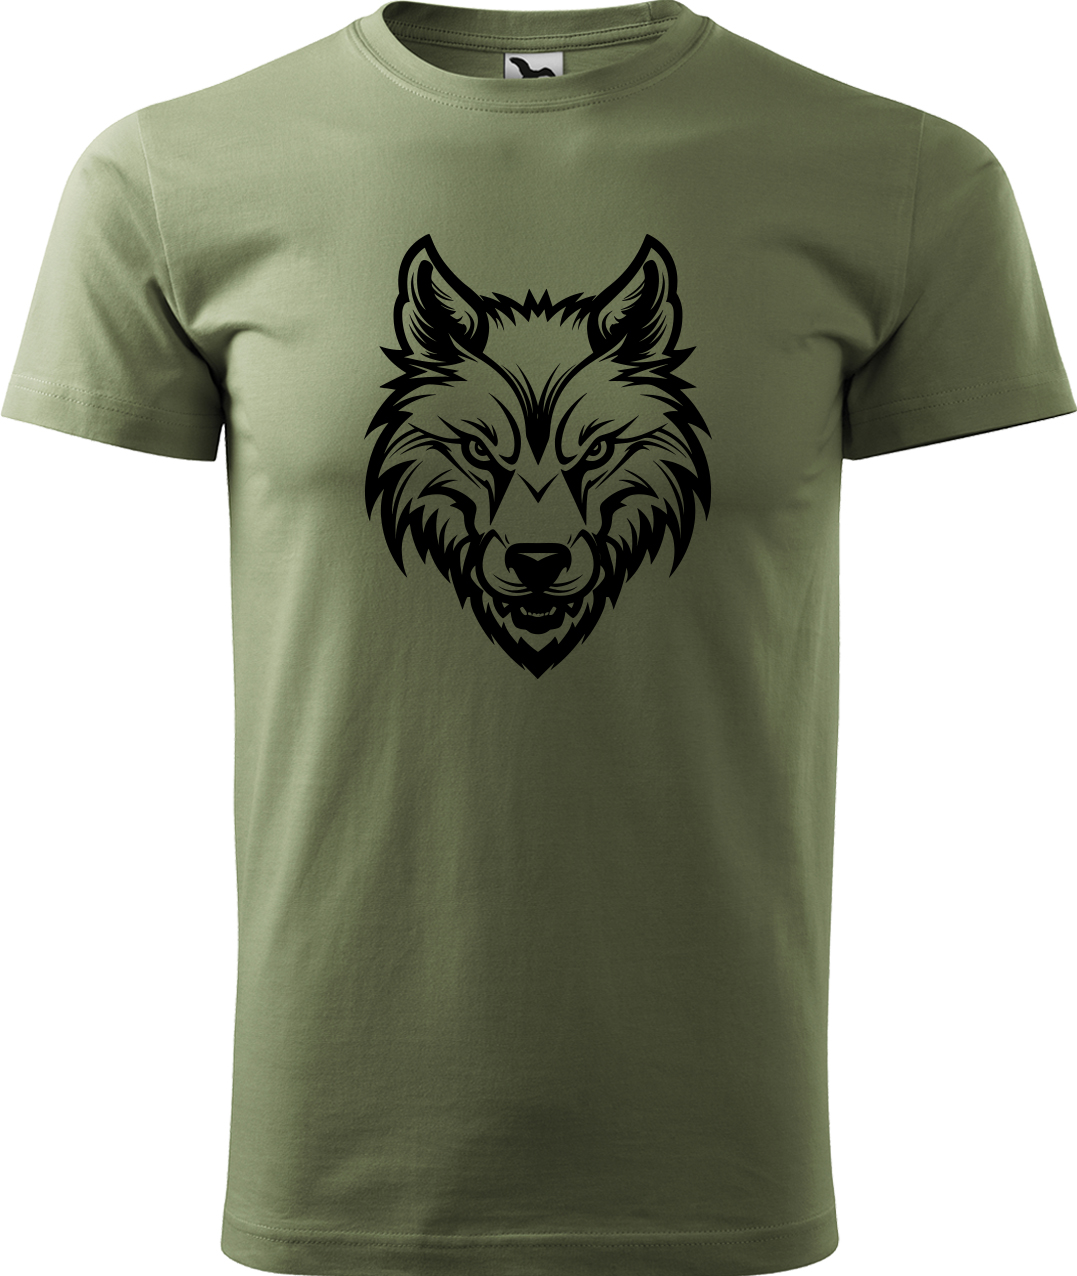 Pánské tričko s vlkem - Alfa samec Velikost: 4XL, Barva: Světlá khaki (28), Střih: pánský